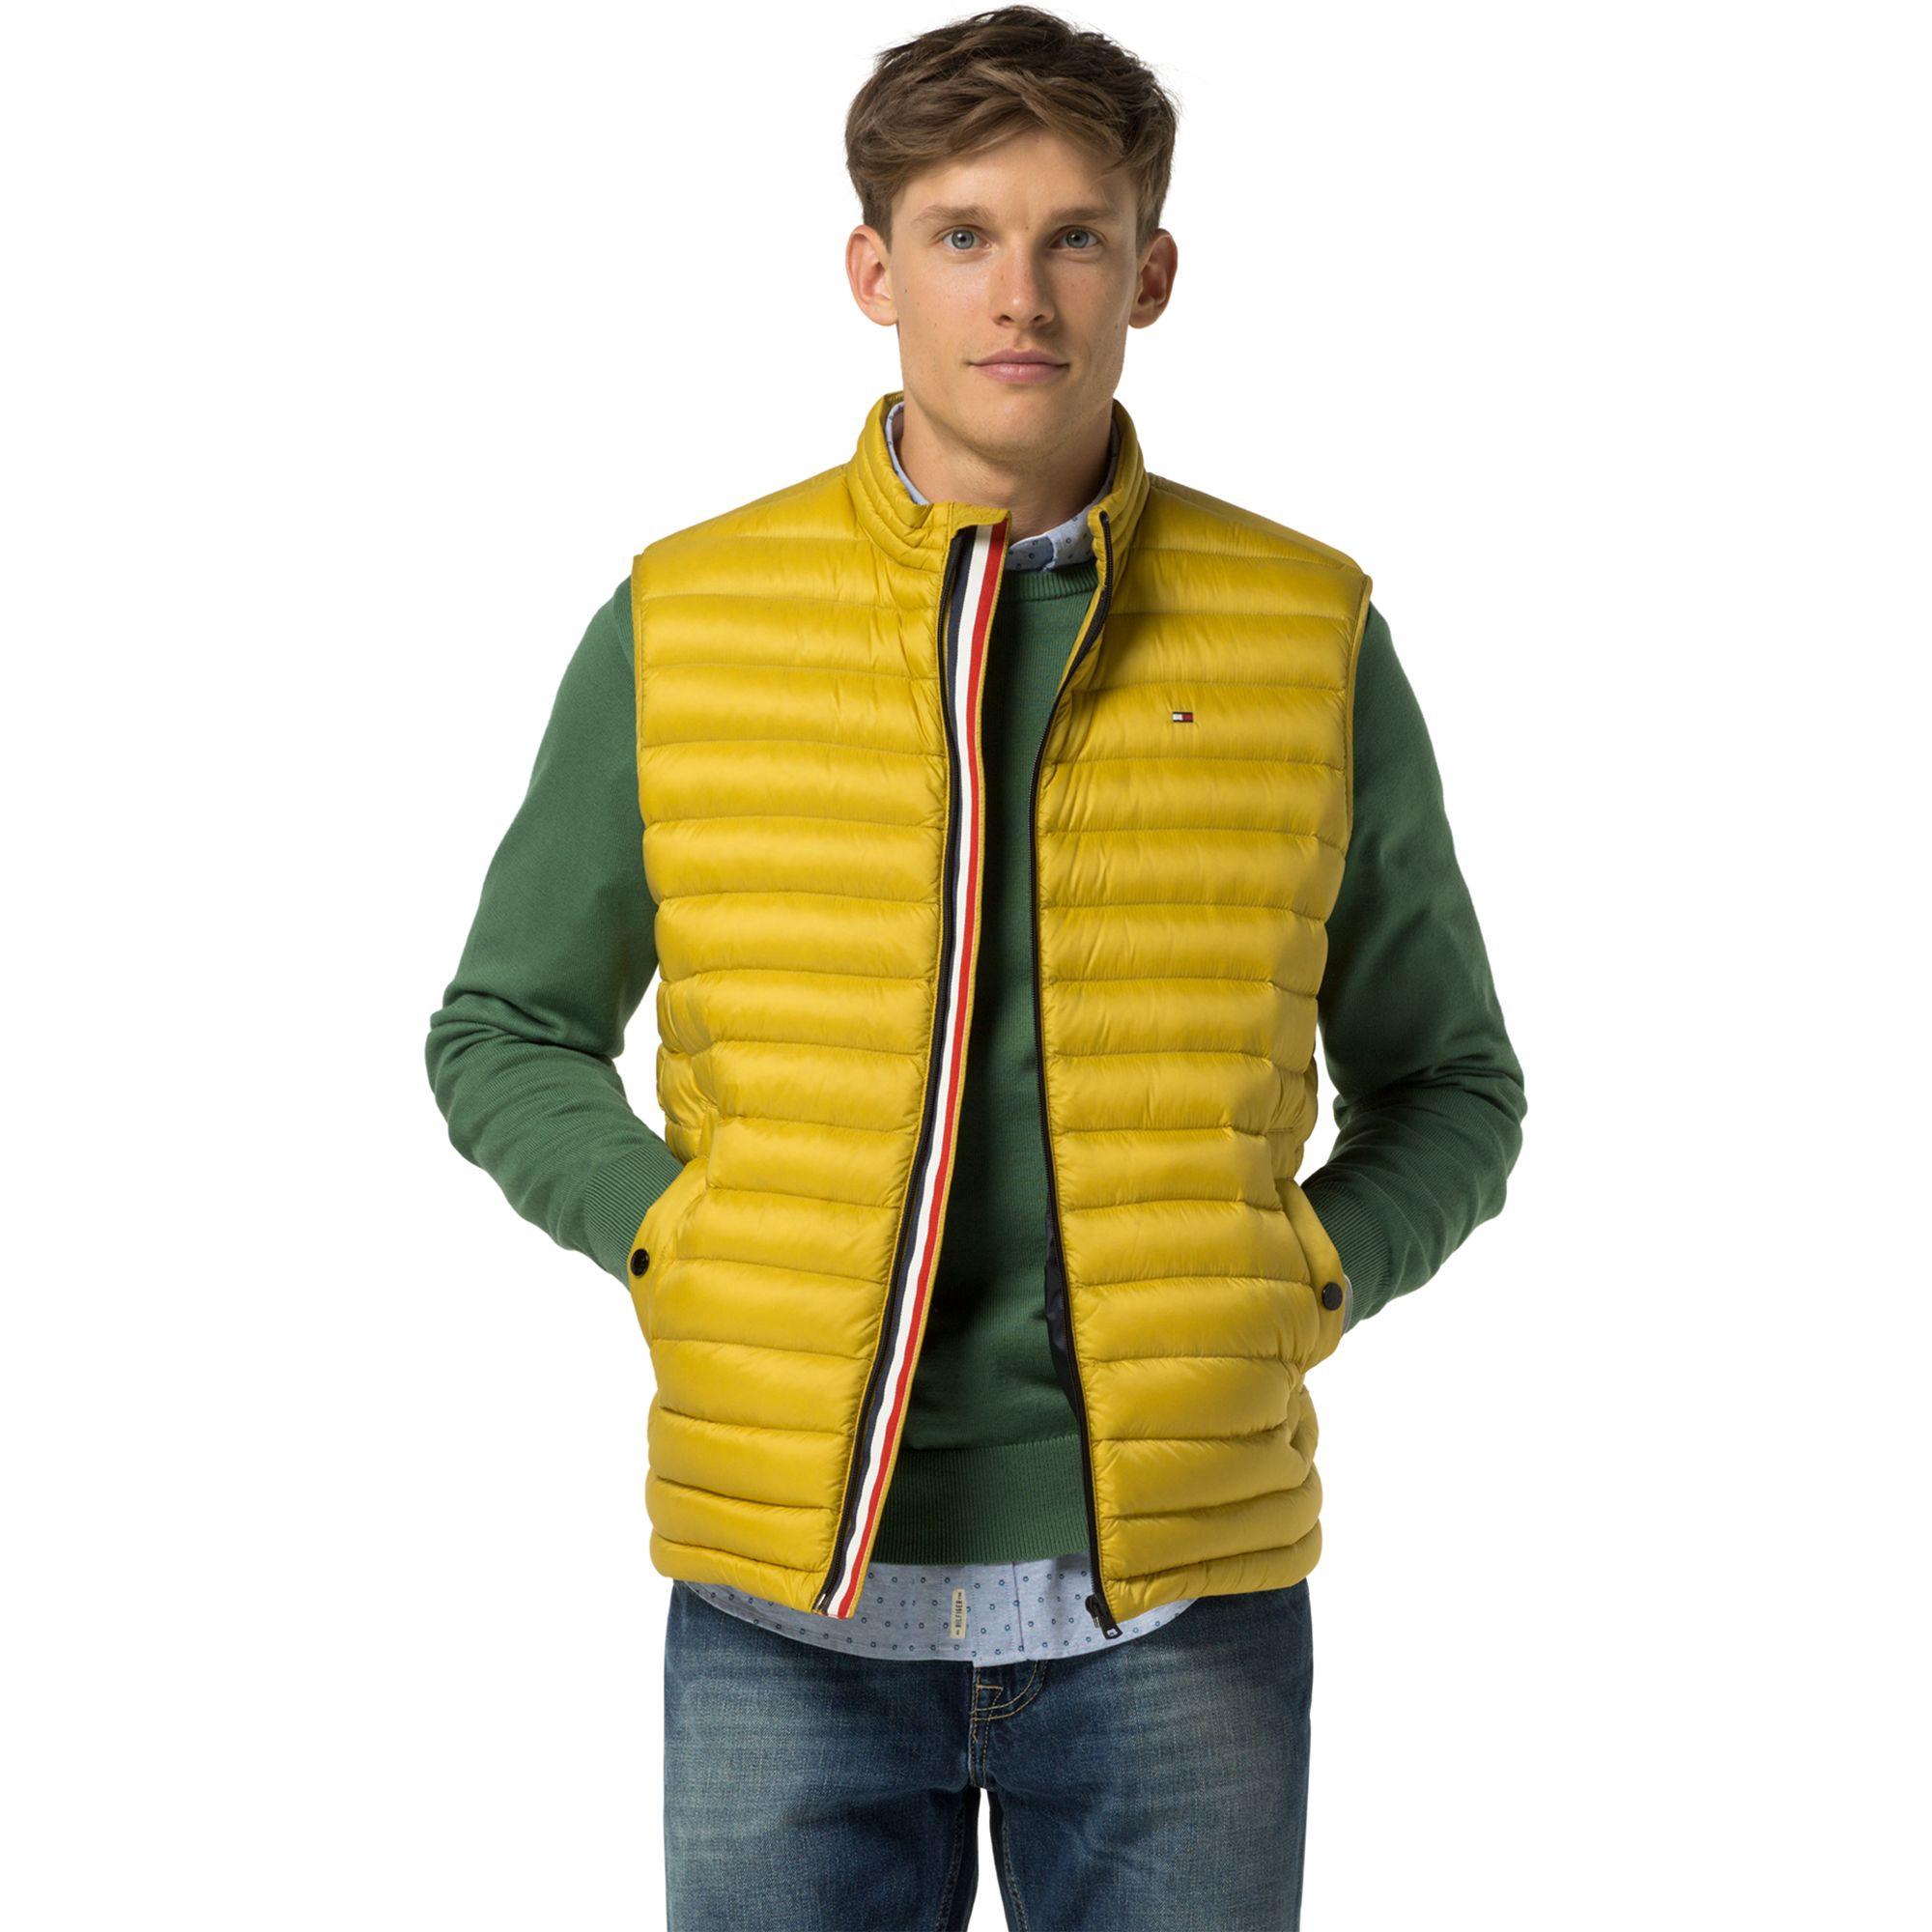 hilfiger yellow jacket